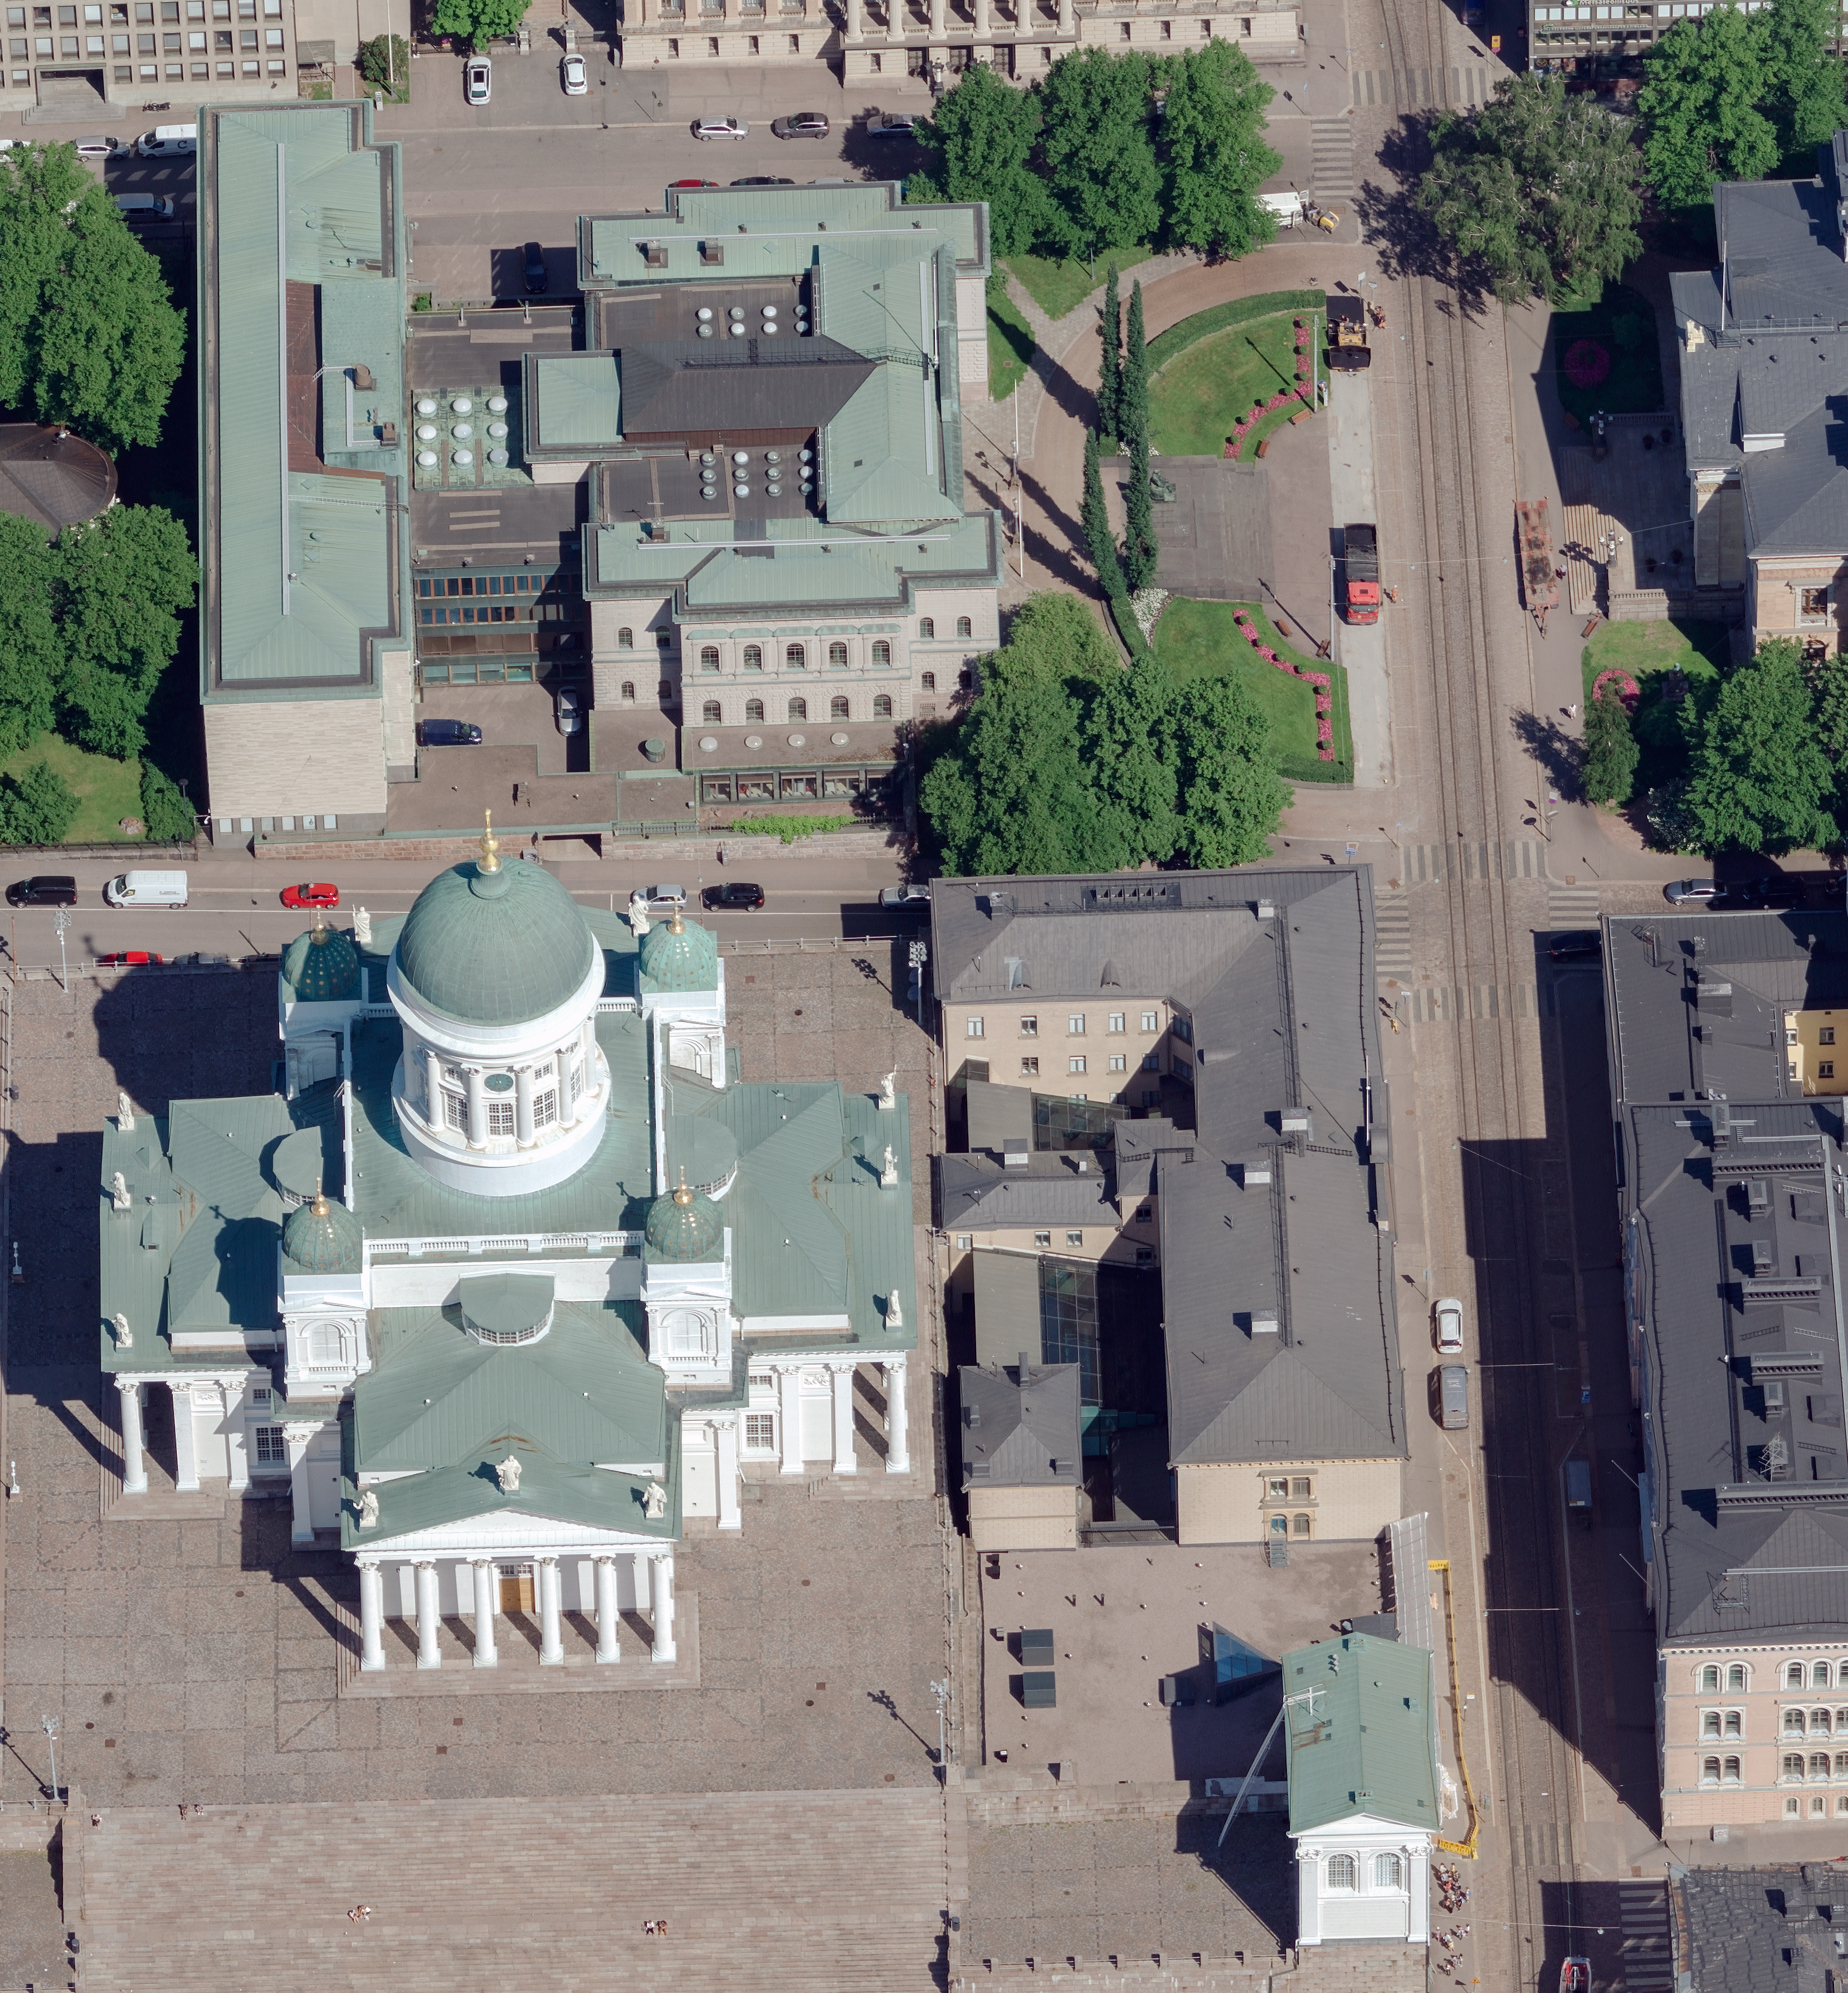 Dom zu Helsinki Oblique Luftbild